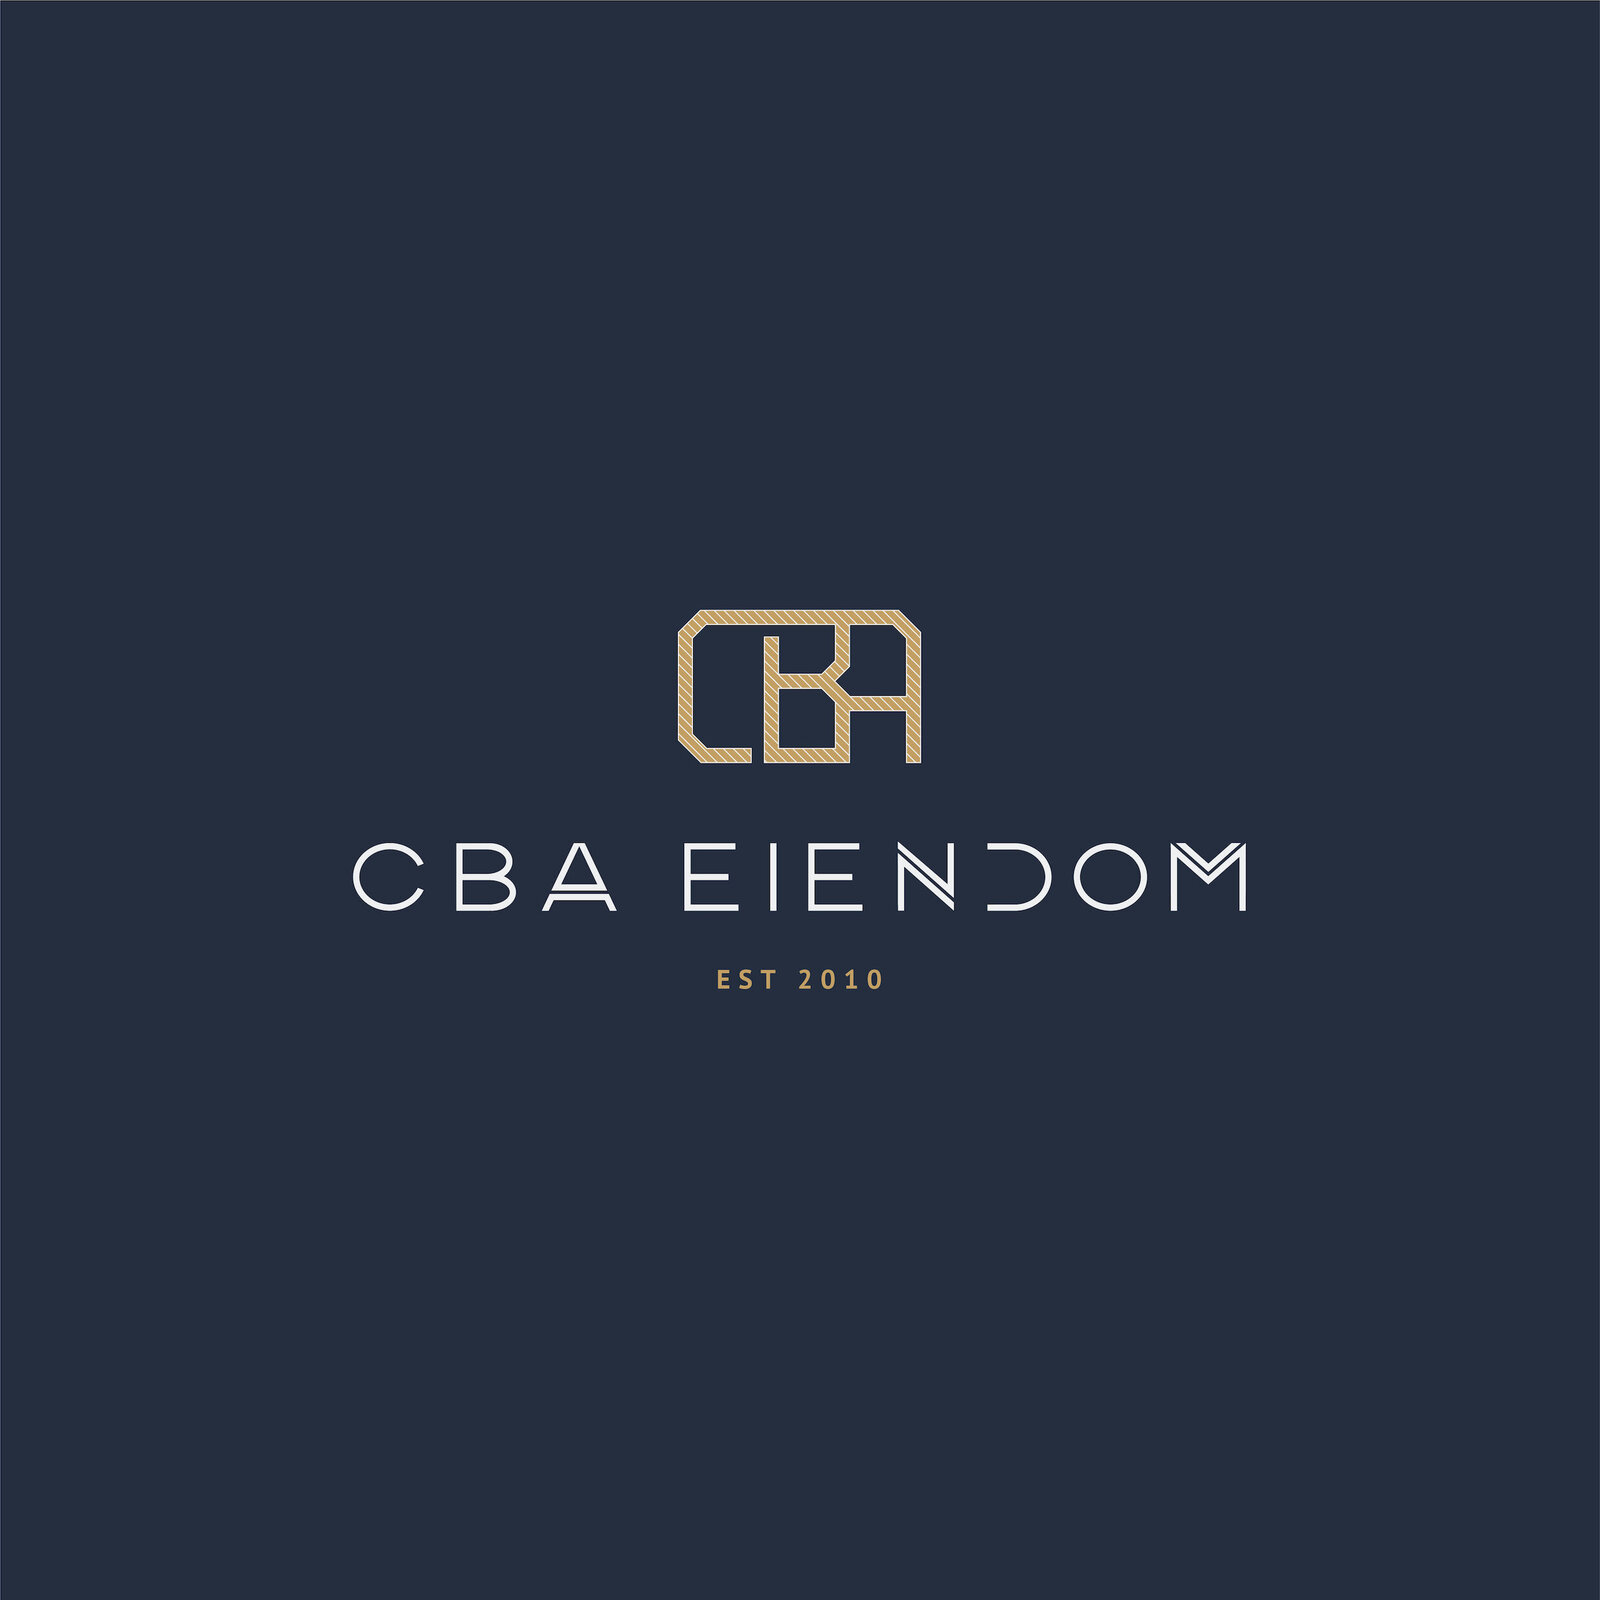 Persona-Vera-branding-CBA-Eiendom-15